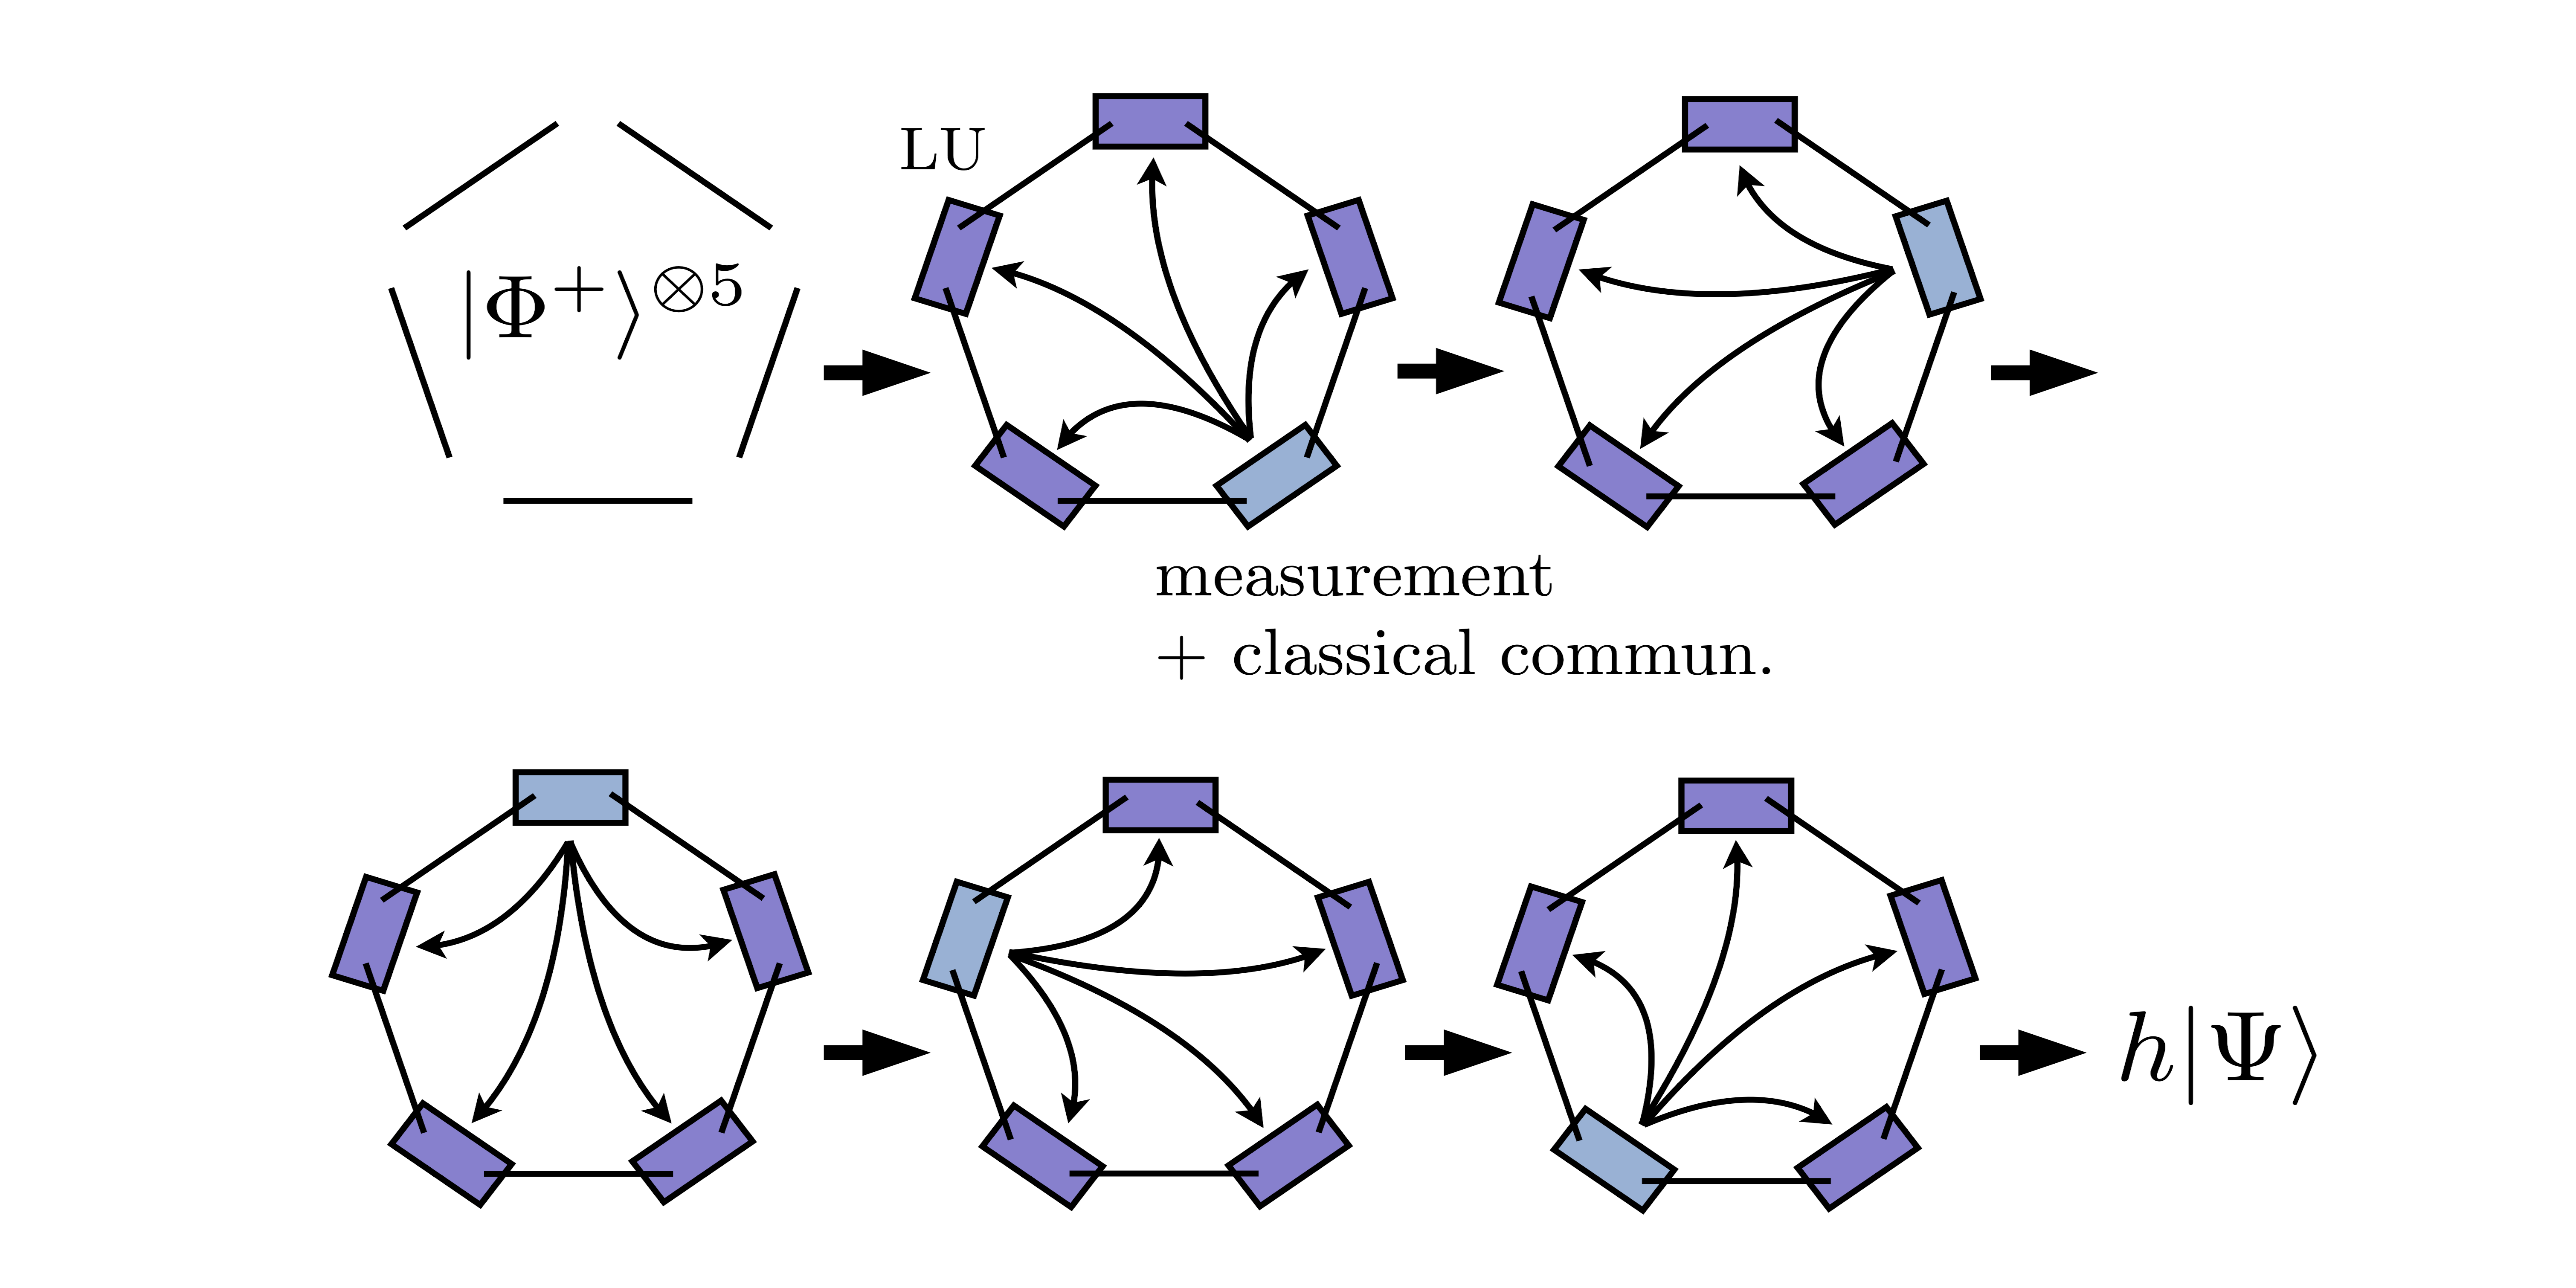 Transformacje w sieciach kwantowych poprzez operacje lokalne wspomagane przez skończoną liczbę rund komunikacji klasycznej